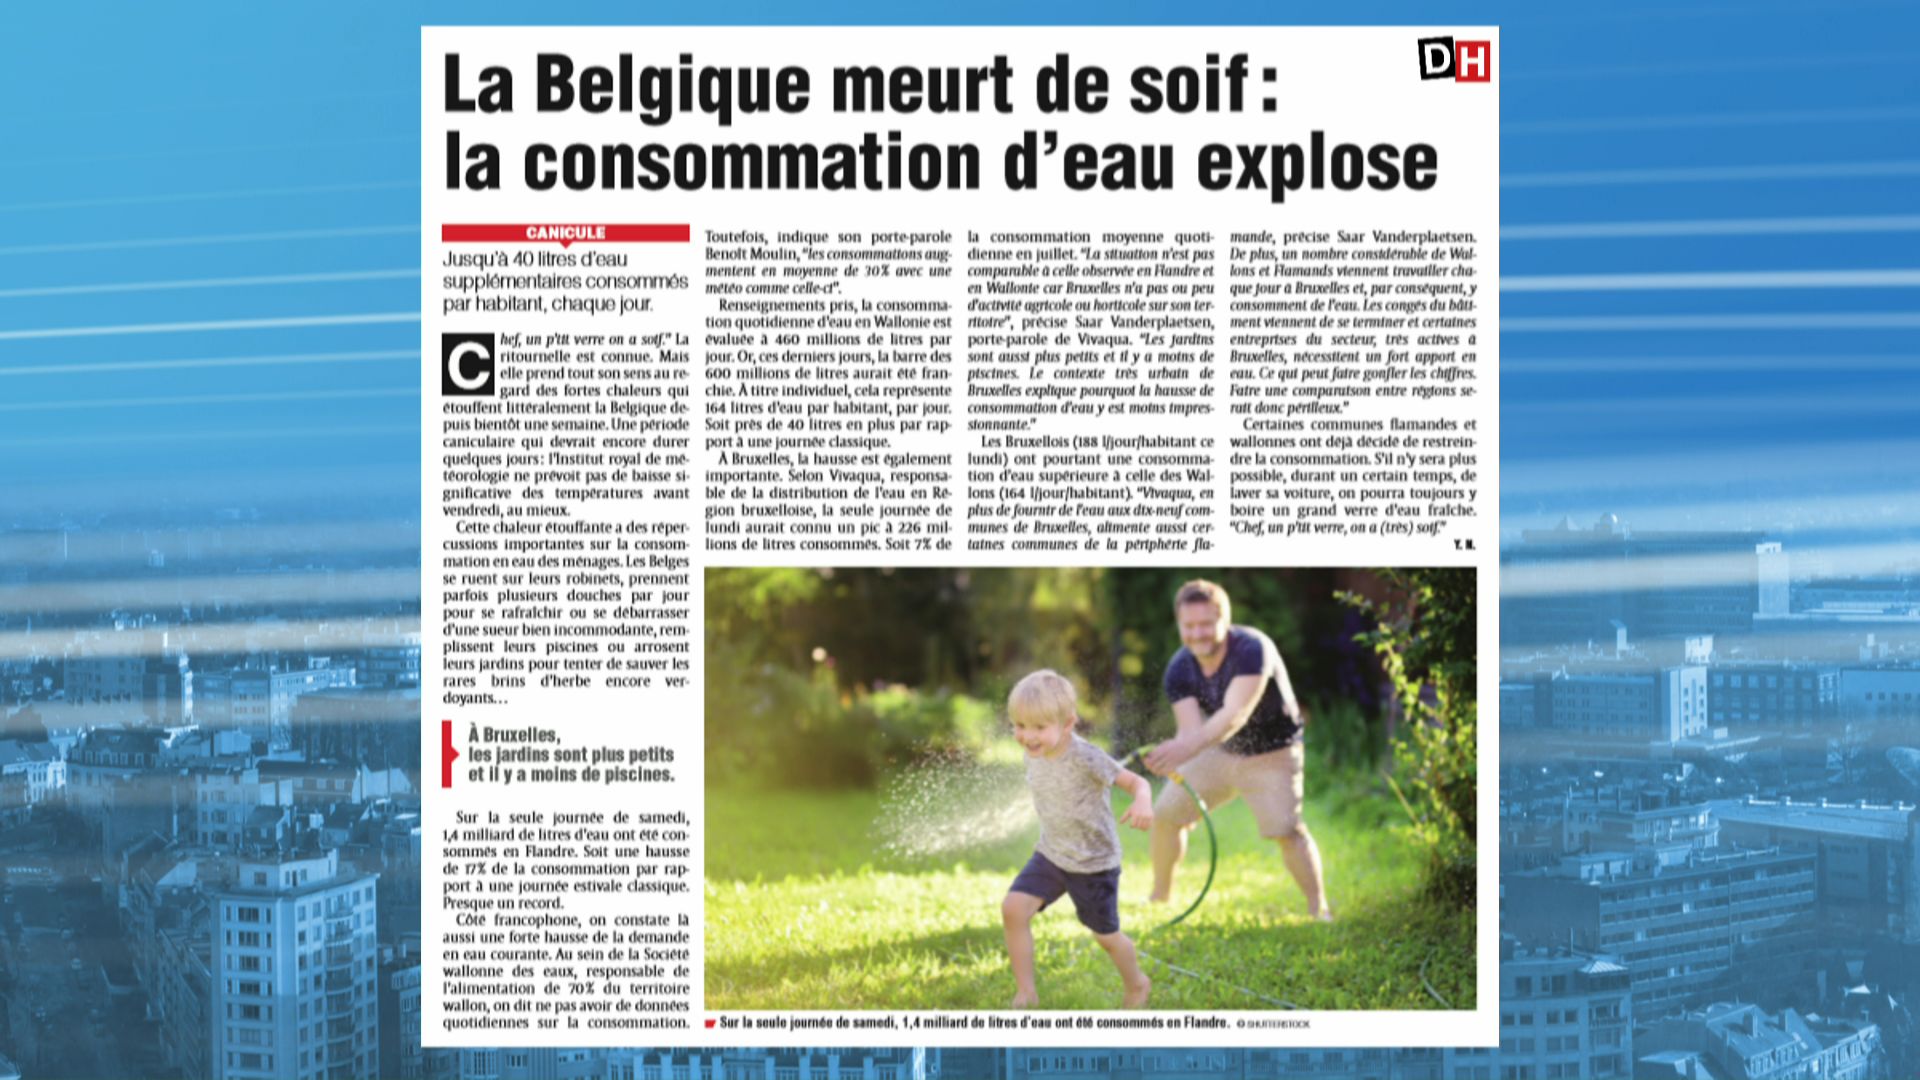 La Belgique meurt de soif : consommation d'eau explose